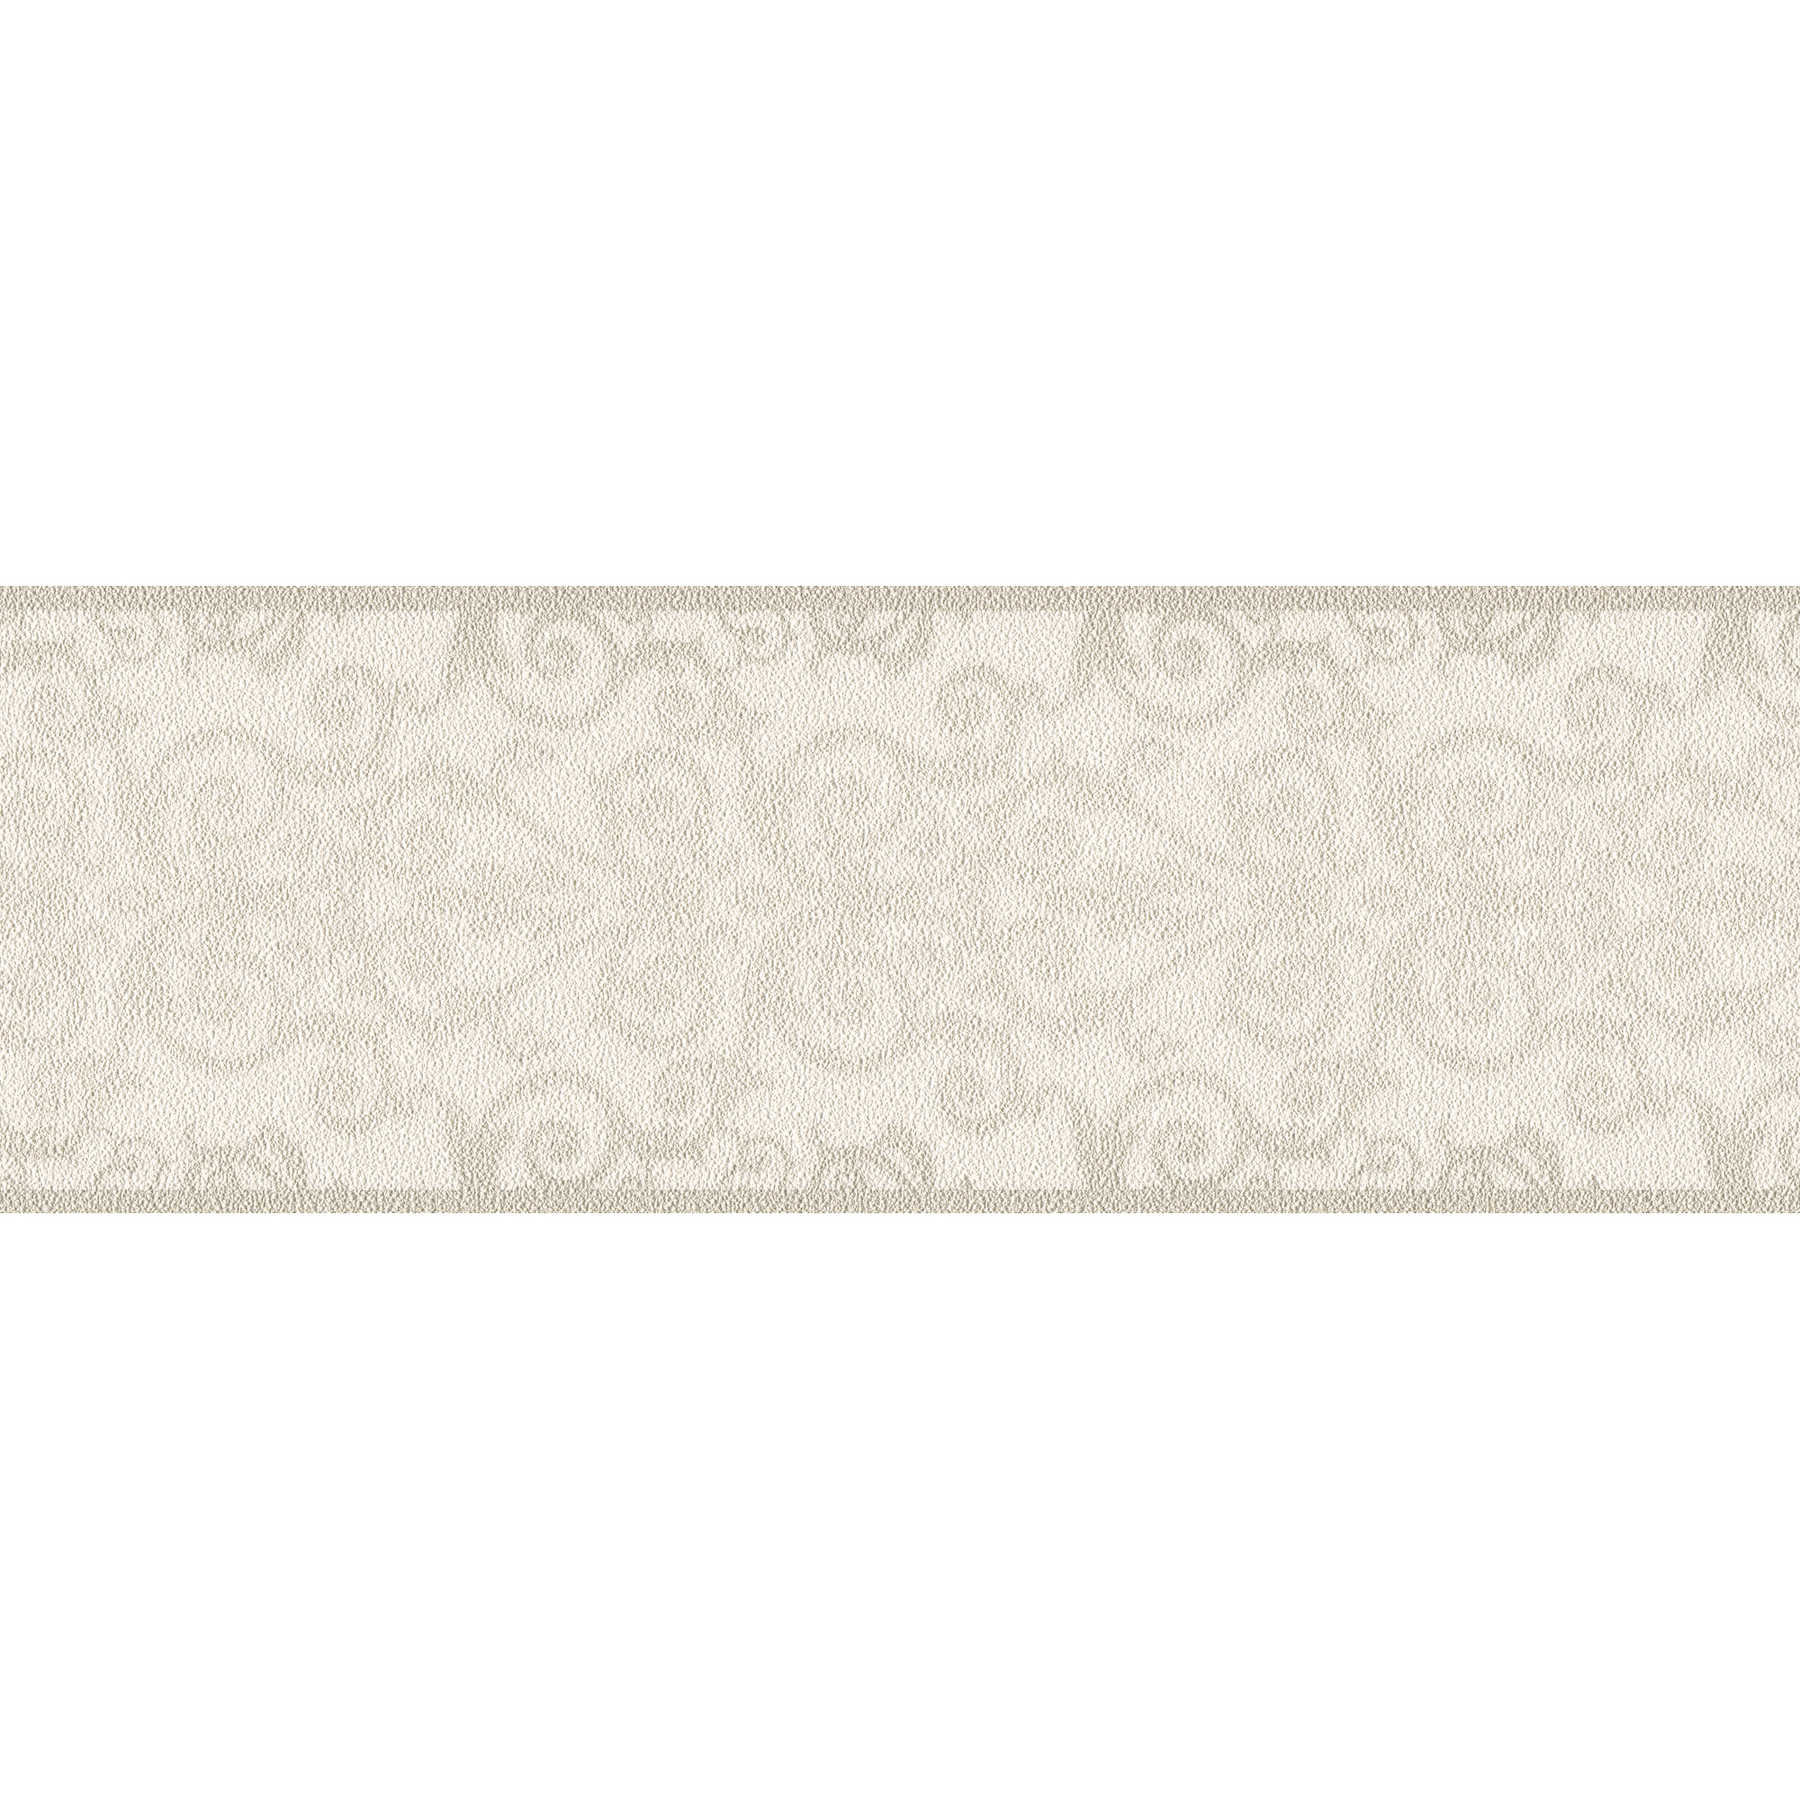 Bordo per carta da parati metallizzata con ornamento barocco - grigio
